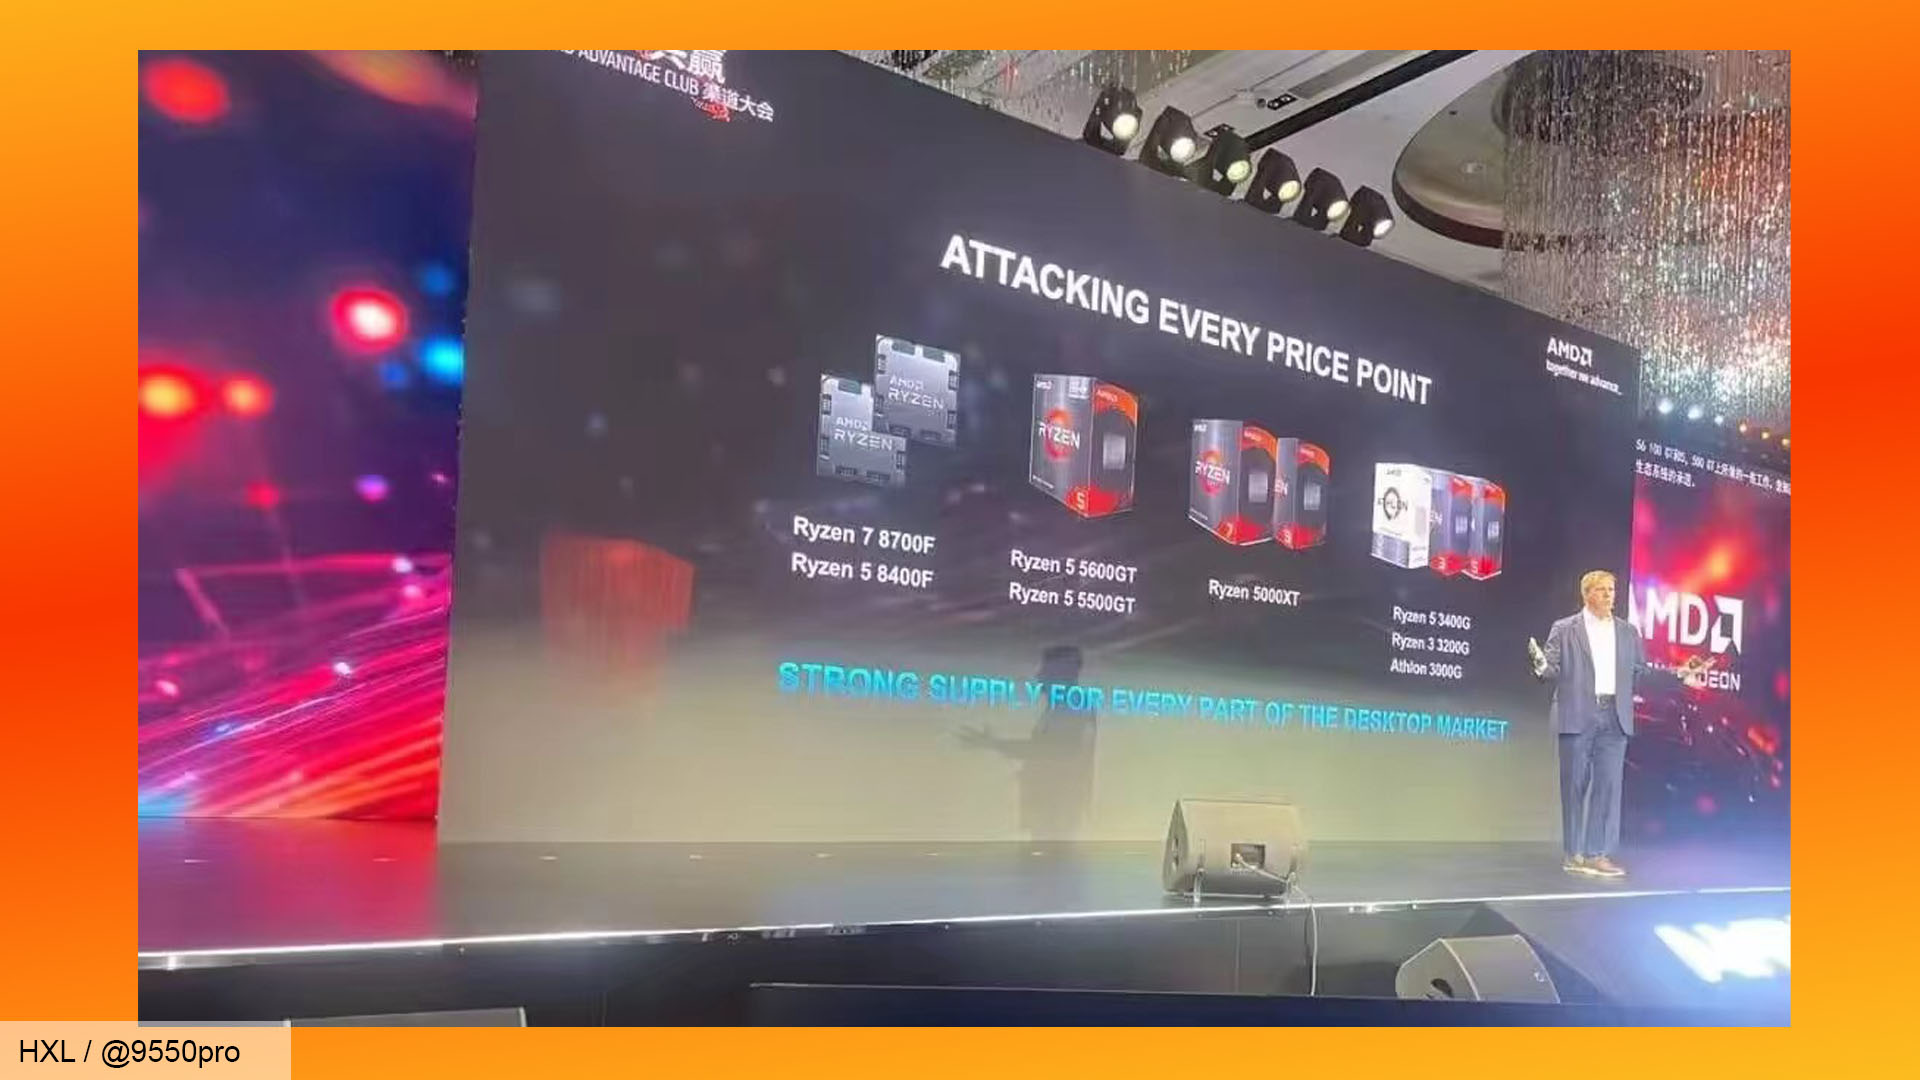 Diapositive de présentation du processeur AMD Ryzen 5000XT - @9550pro